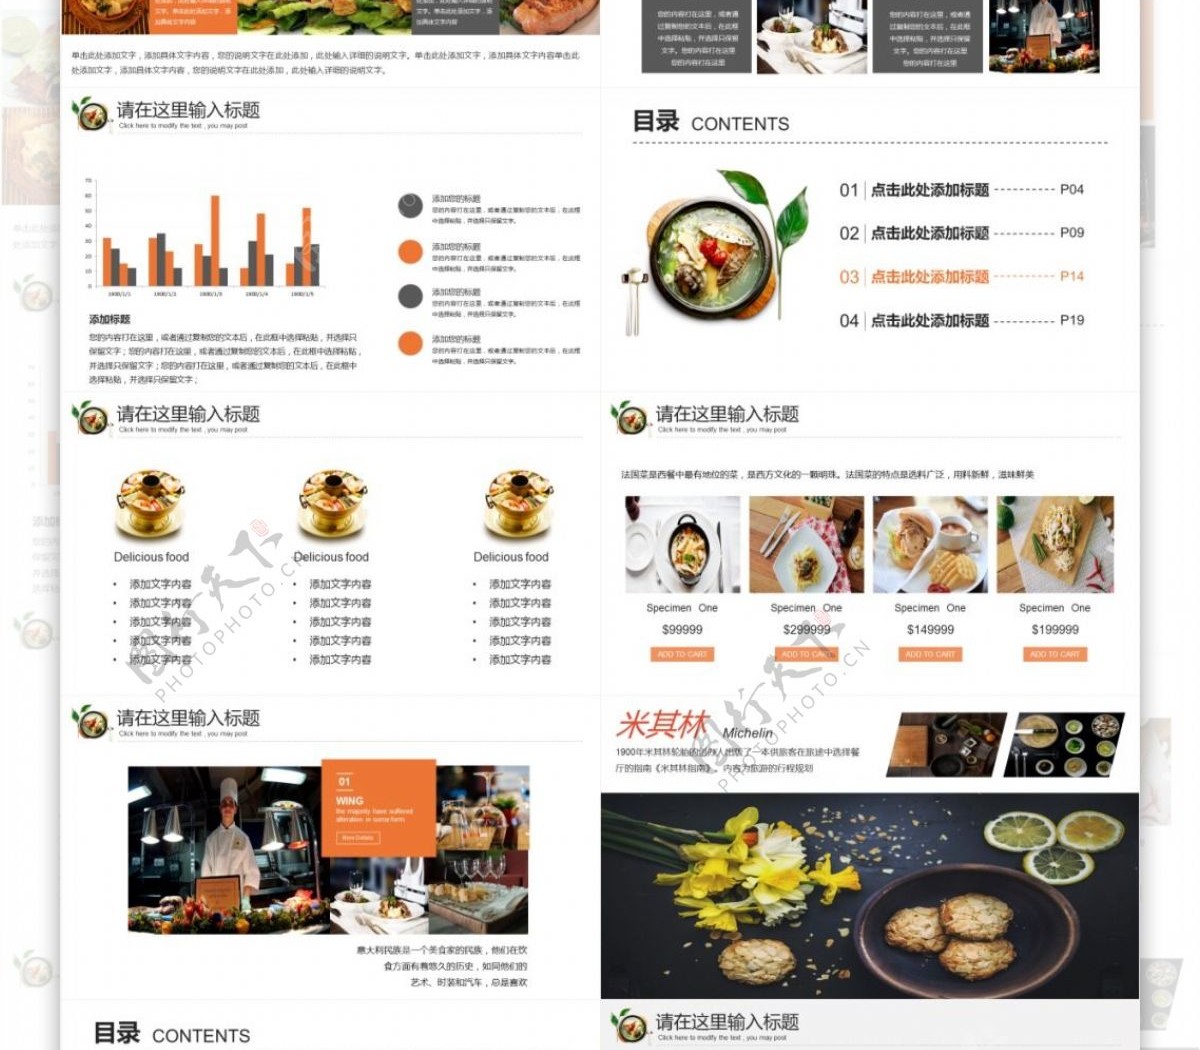 简约中国传统美食文化汇报PPT模板免费下载